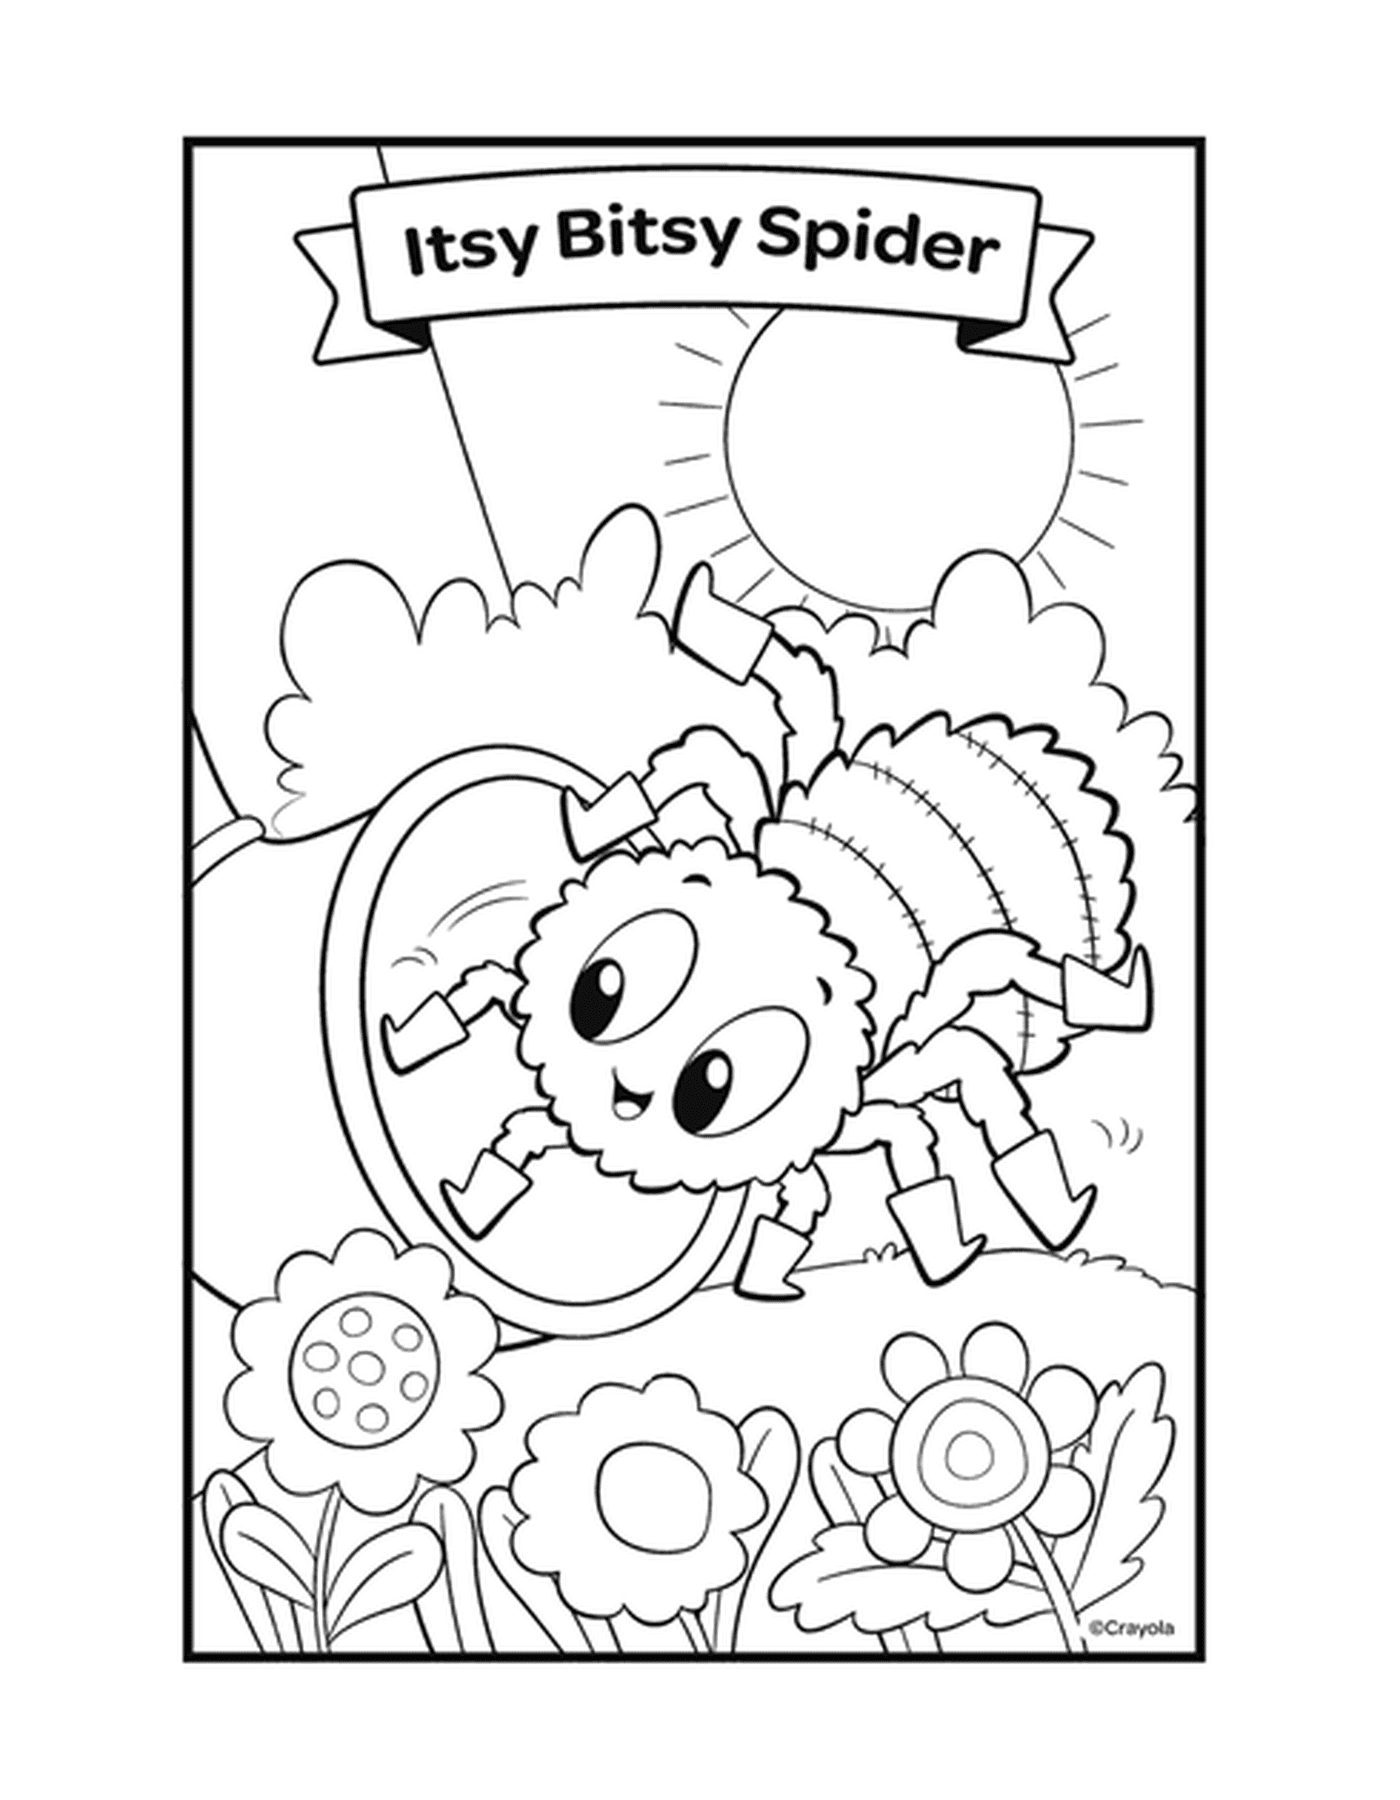  La Araña Itsy Bitsy rima con una araña en una telaraña 